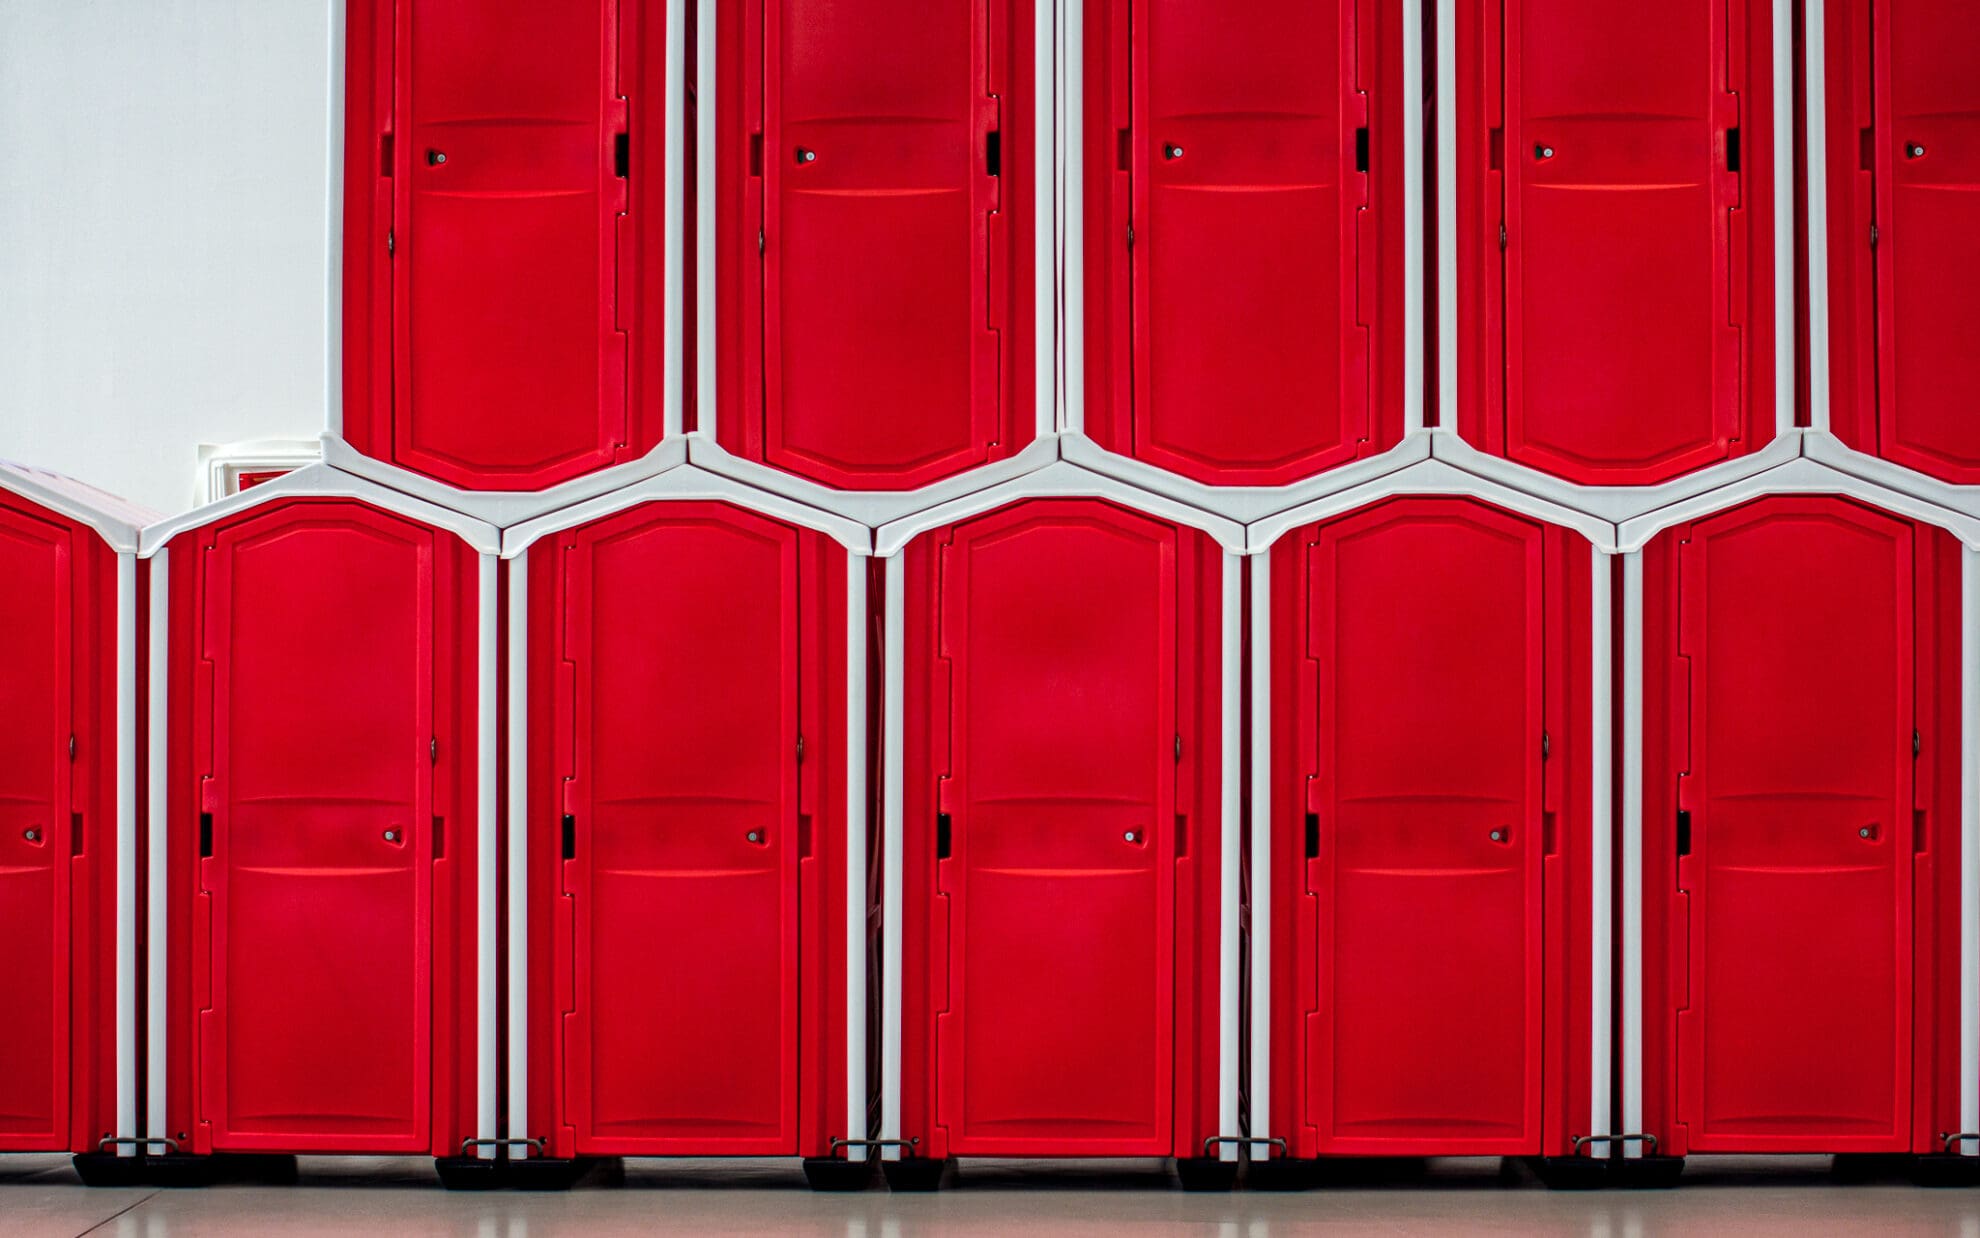 Leuchtend Rote mobile Toilettenhäuschen stehen aneinandergereiht und aufeinander gestapelt.